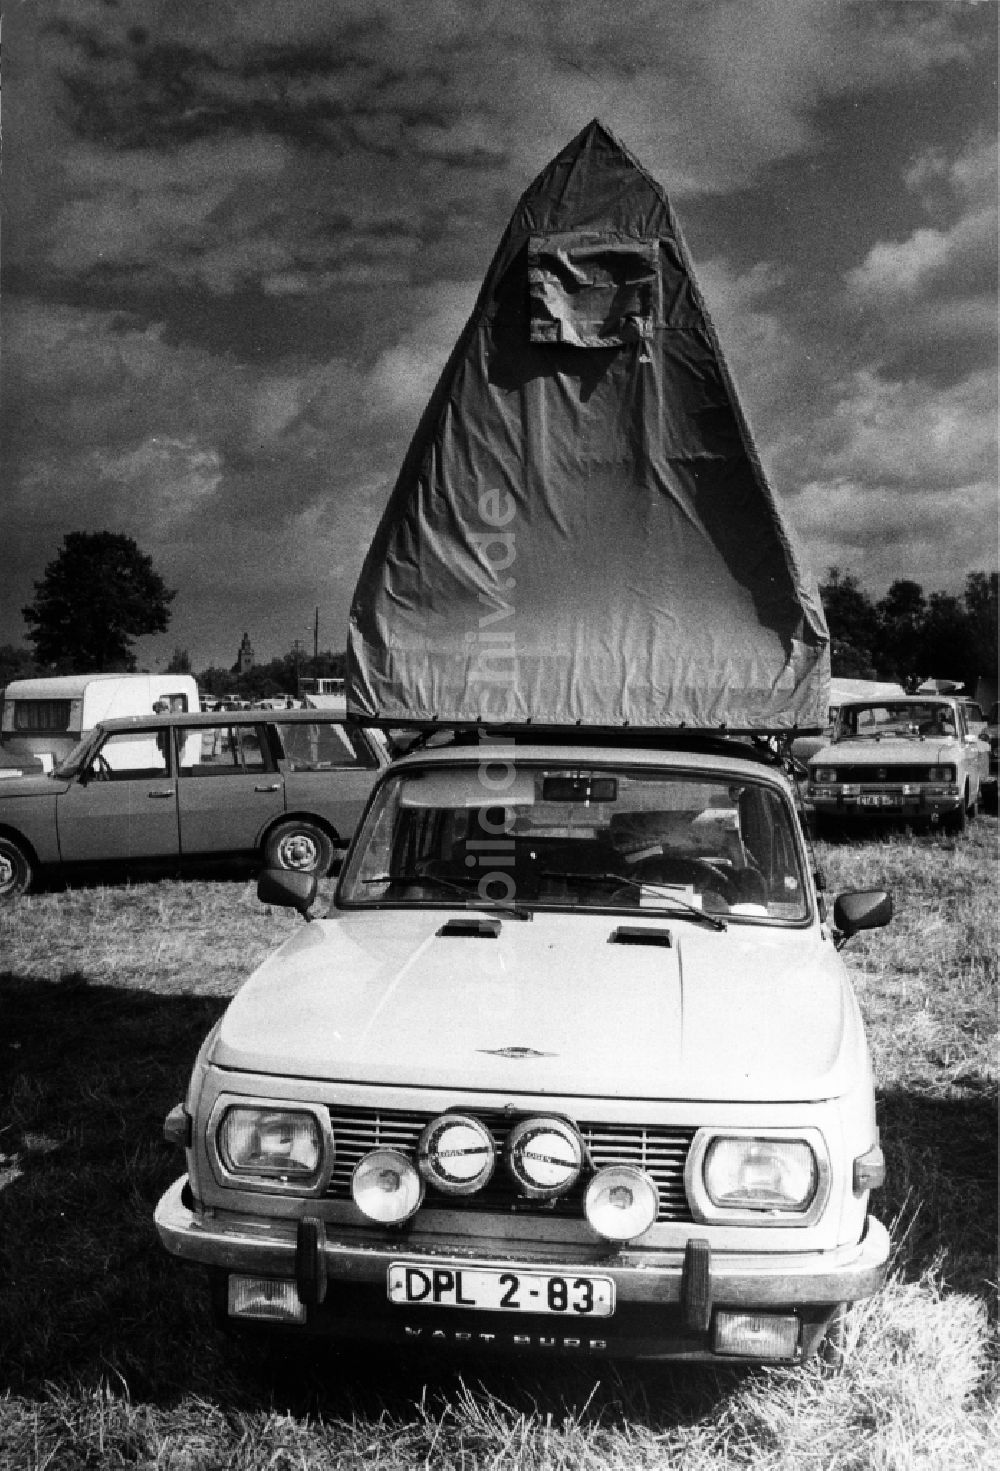 Havelberg: Campingausrüstung Zeltdach auf einem Gepäckträger PKW Automobil Wartburg in Havelberg im Bundesland Sachsen-Anhalt auf dem Gebiet der ehemaligen DDR, Deutsche Demokratische Republik